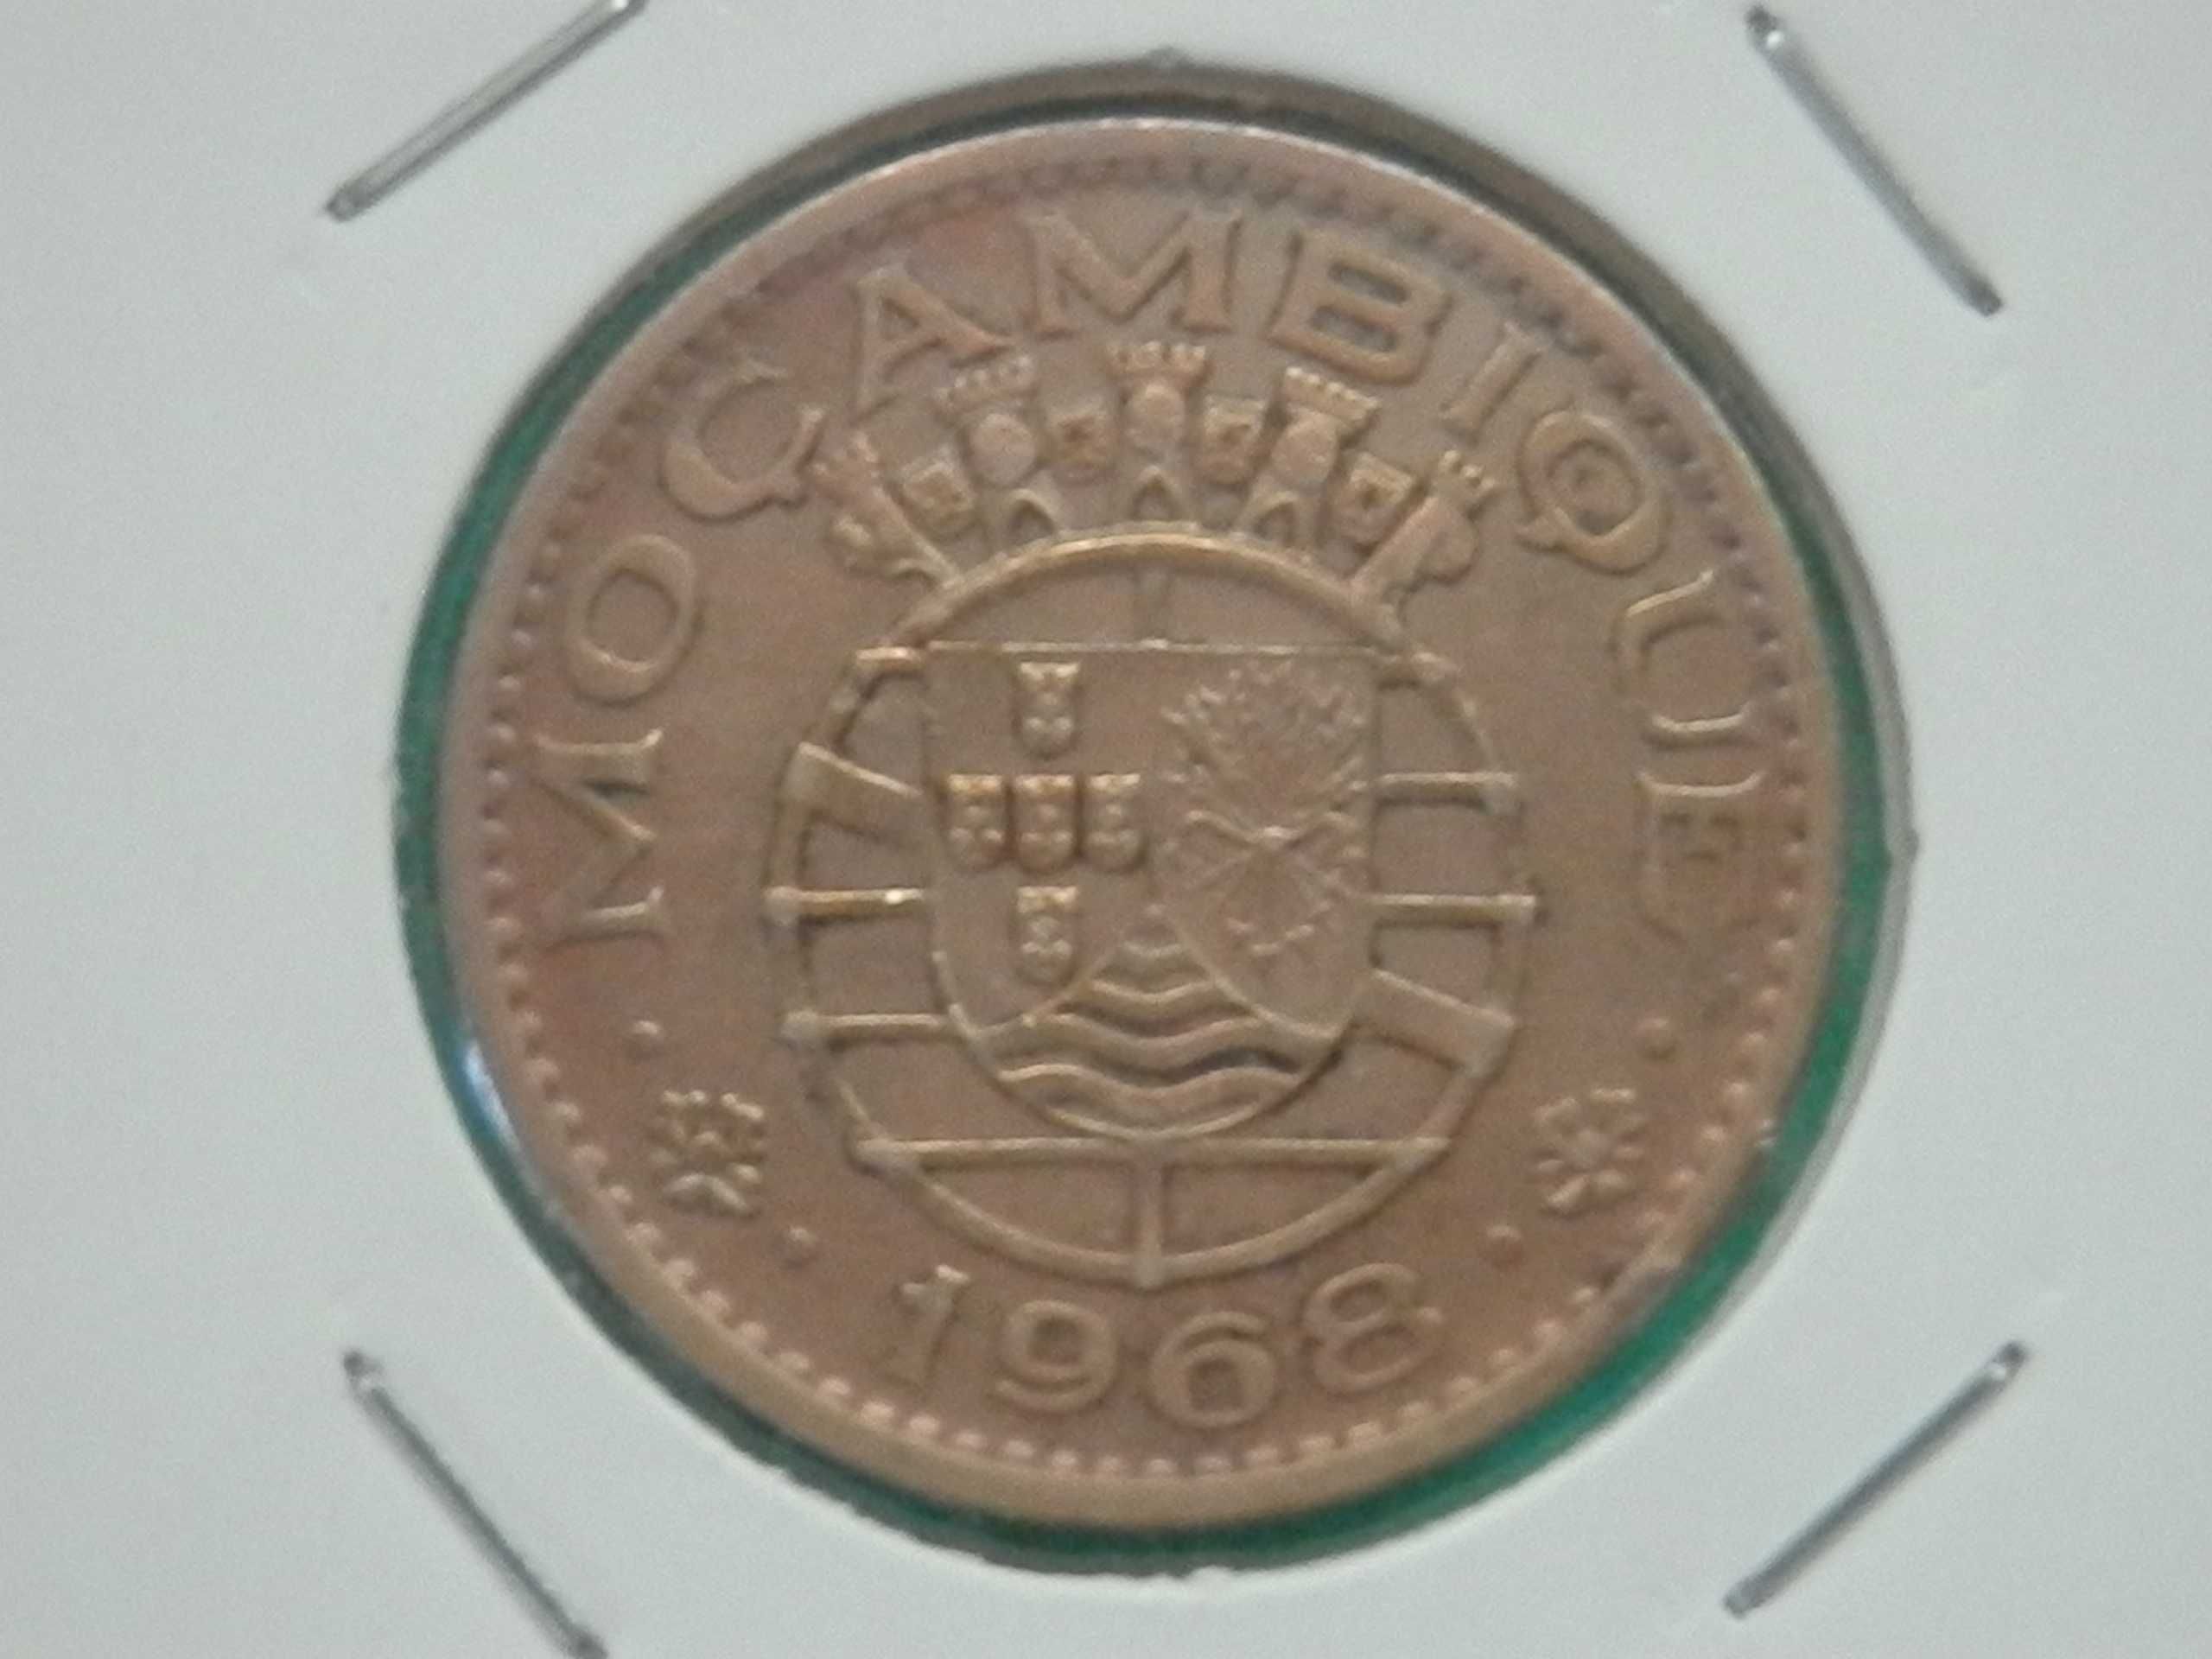 511 - Moçambique: 1 escudo 1968 bronze, por 1,50